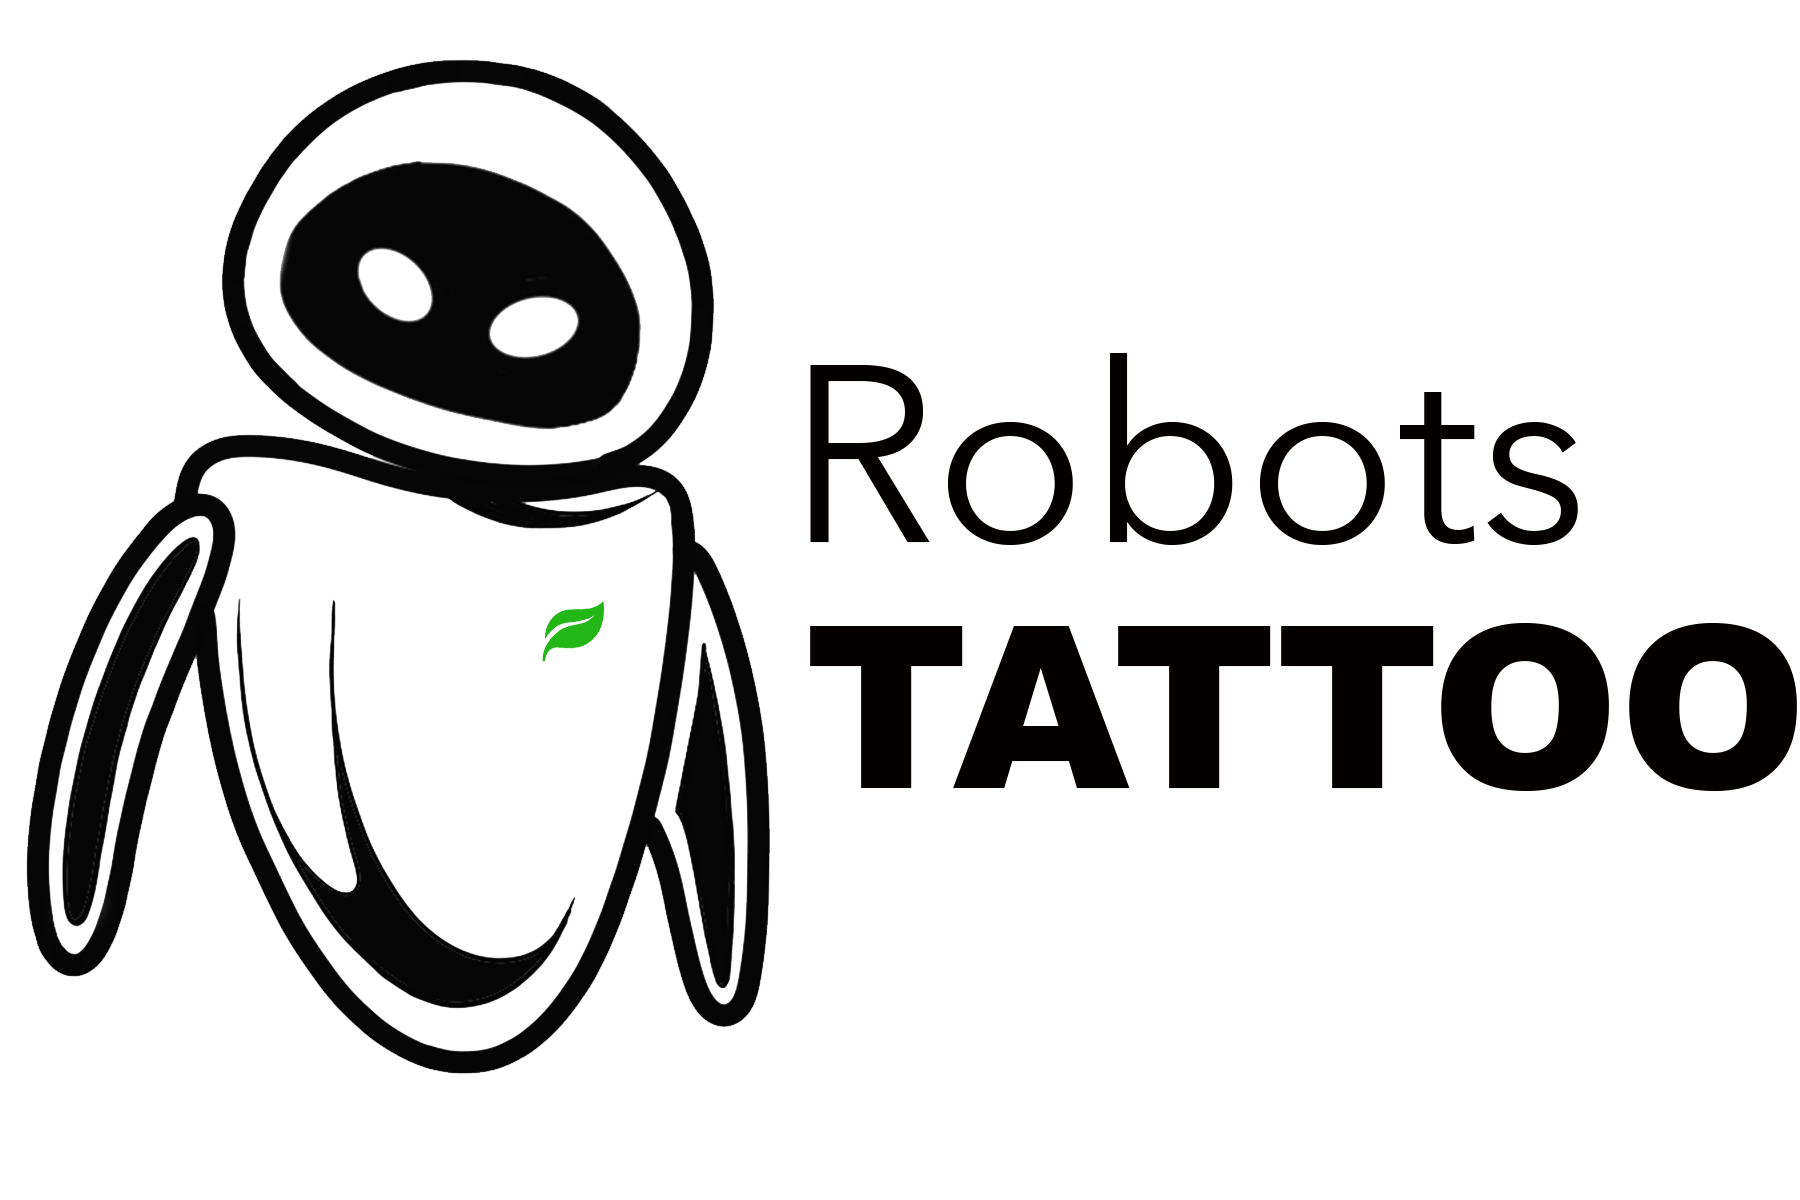 Robots tattoo near by tattoo studio